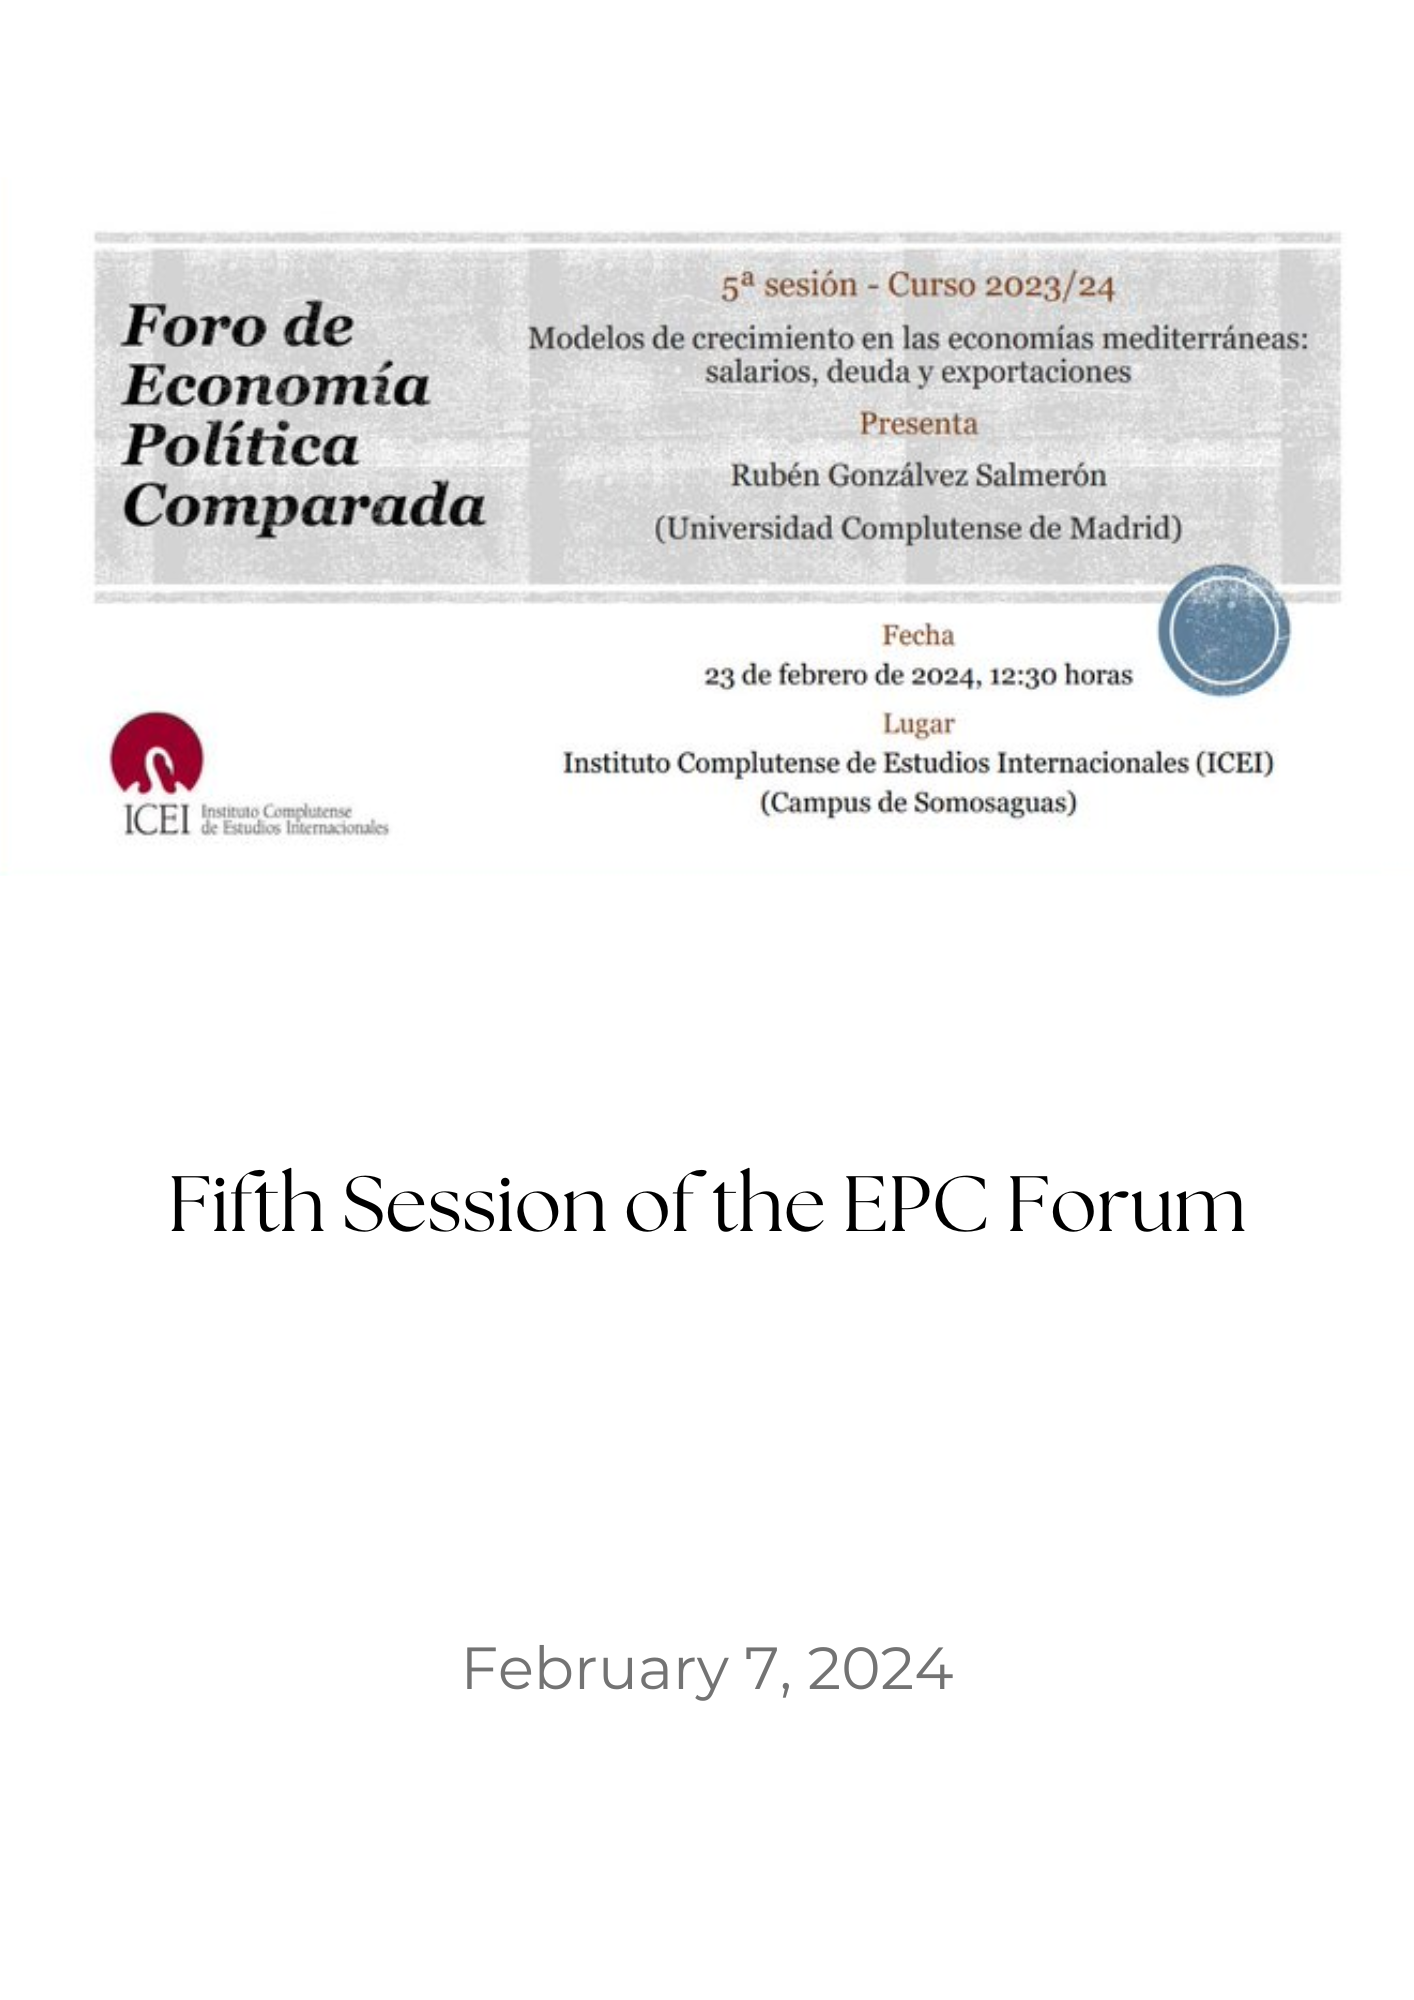 epc forum 5